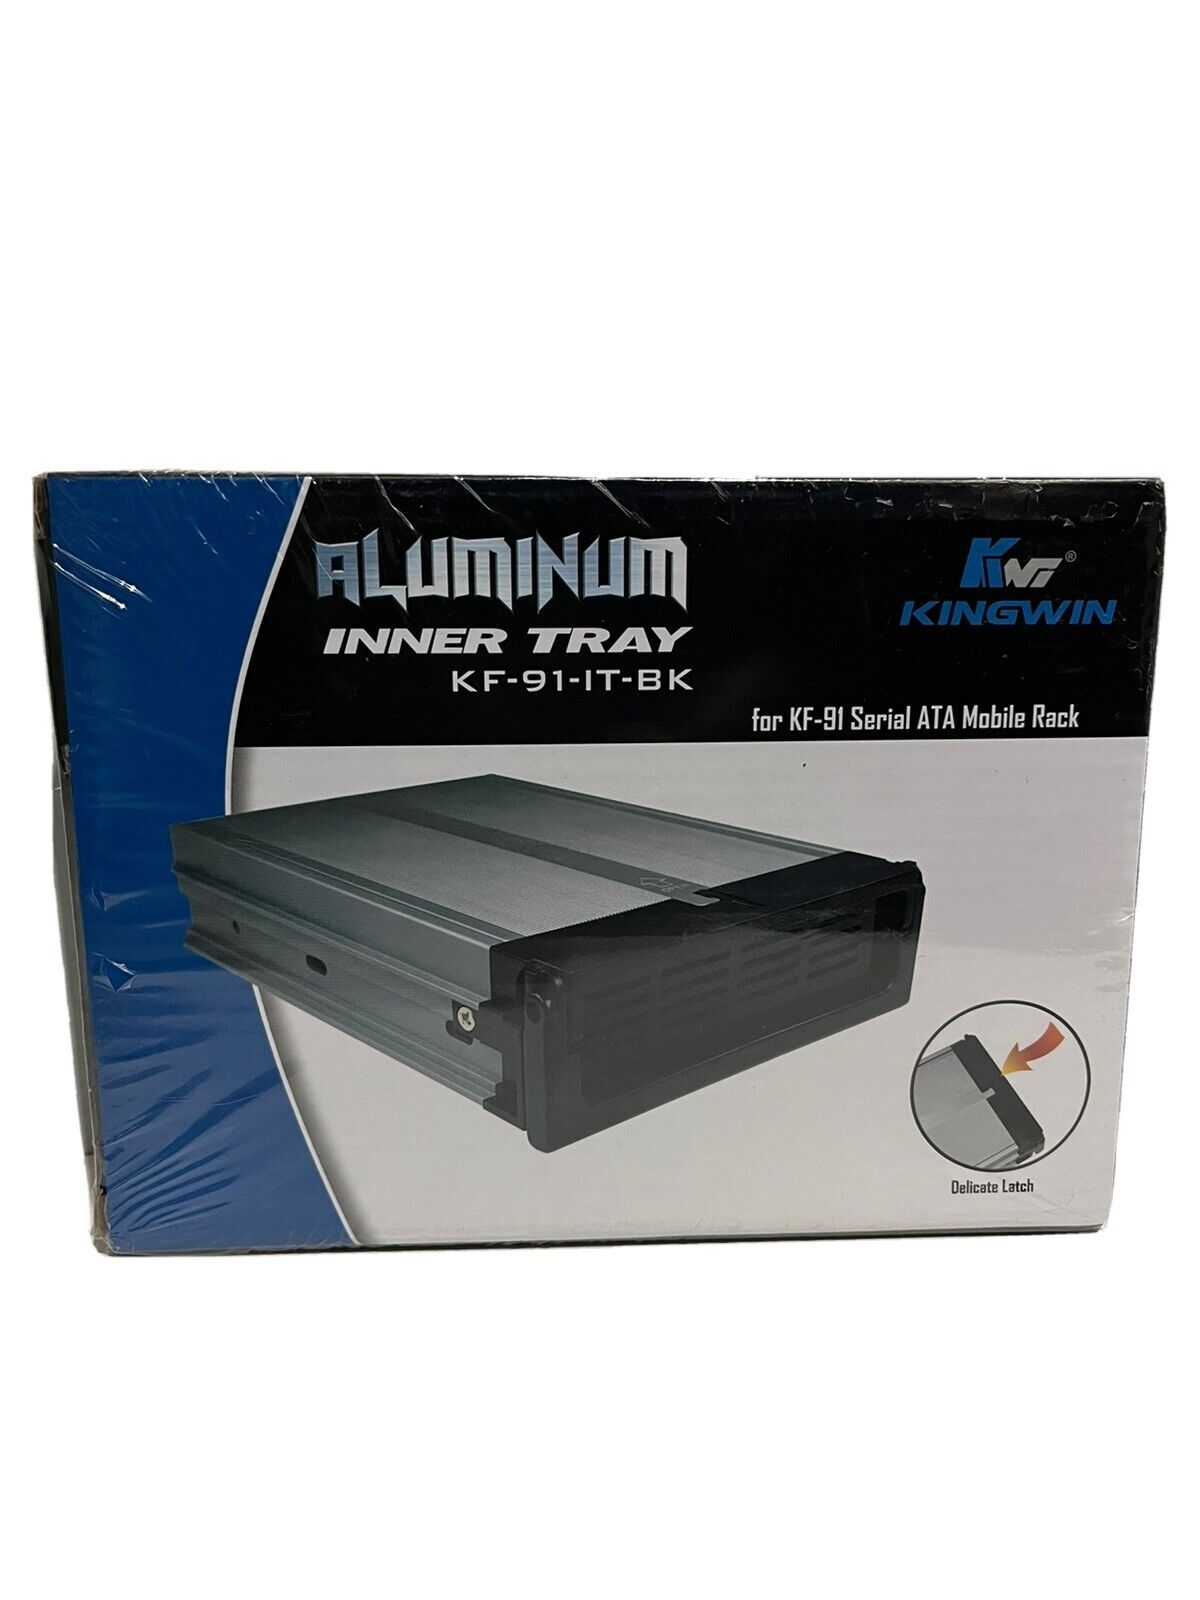 KINGWIN Aluminum Inner Tray KF-91-IT-BK for KF-91 Serial ATA Mobile Rack Sealed